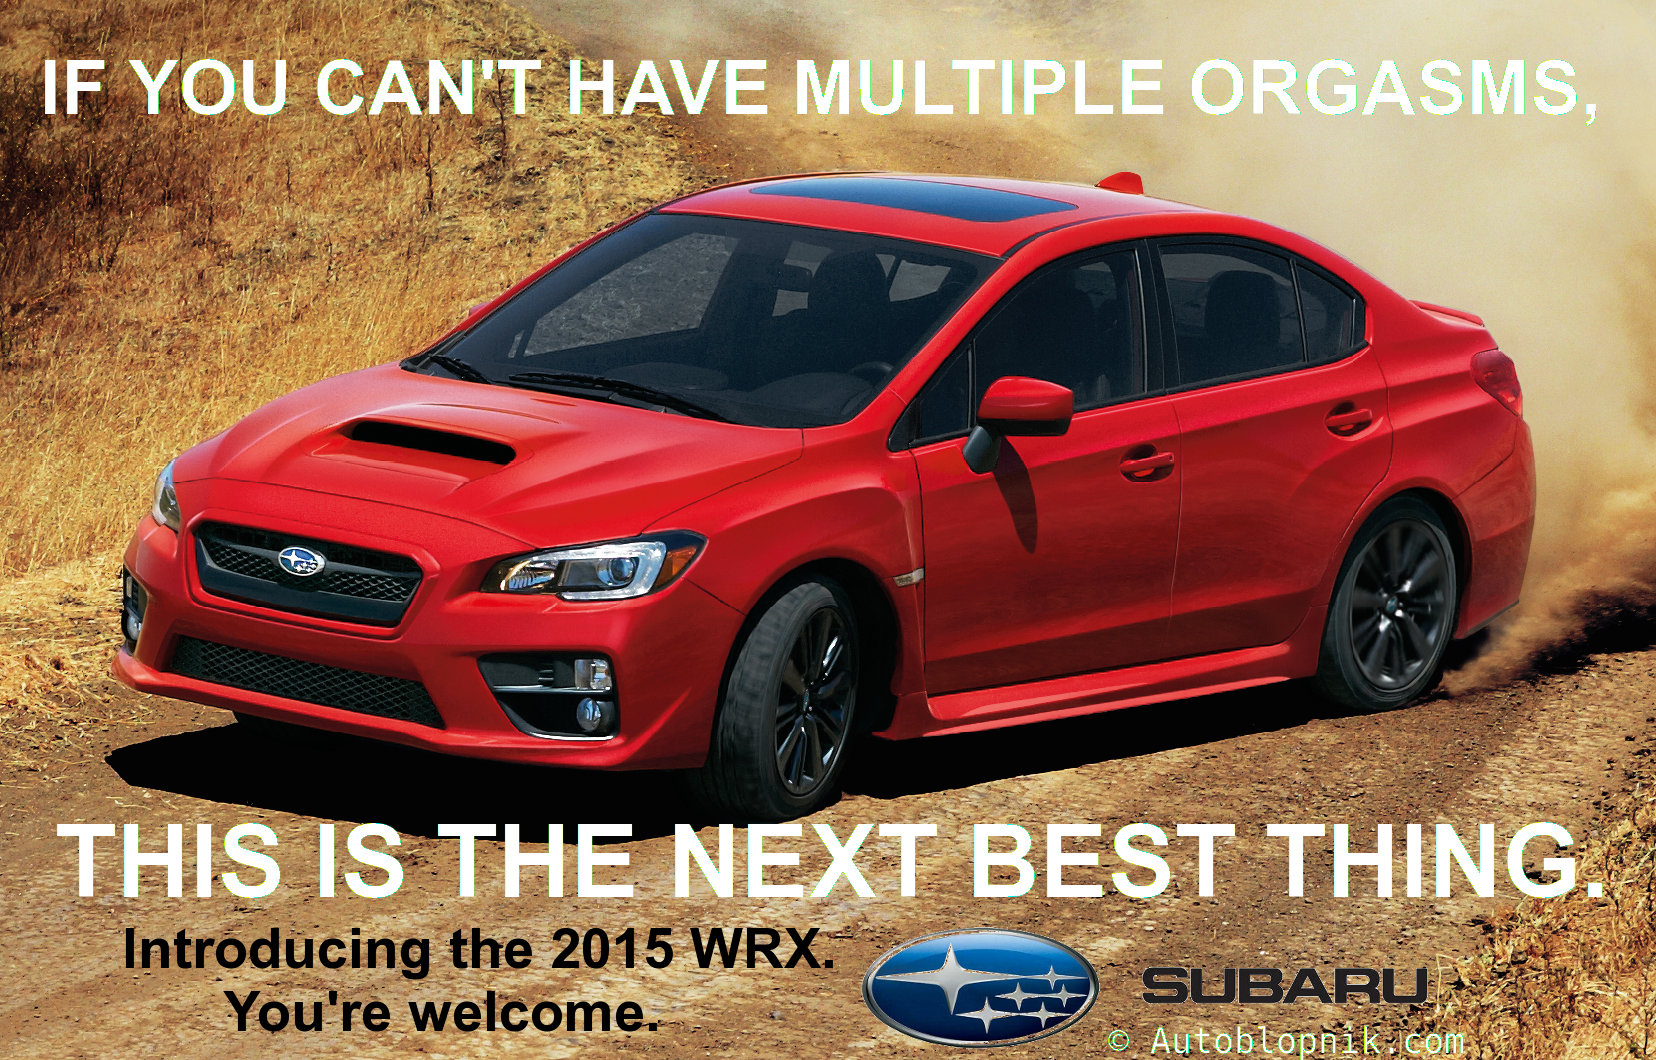 Subaru WRX ad